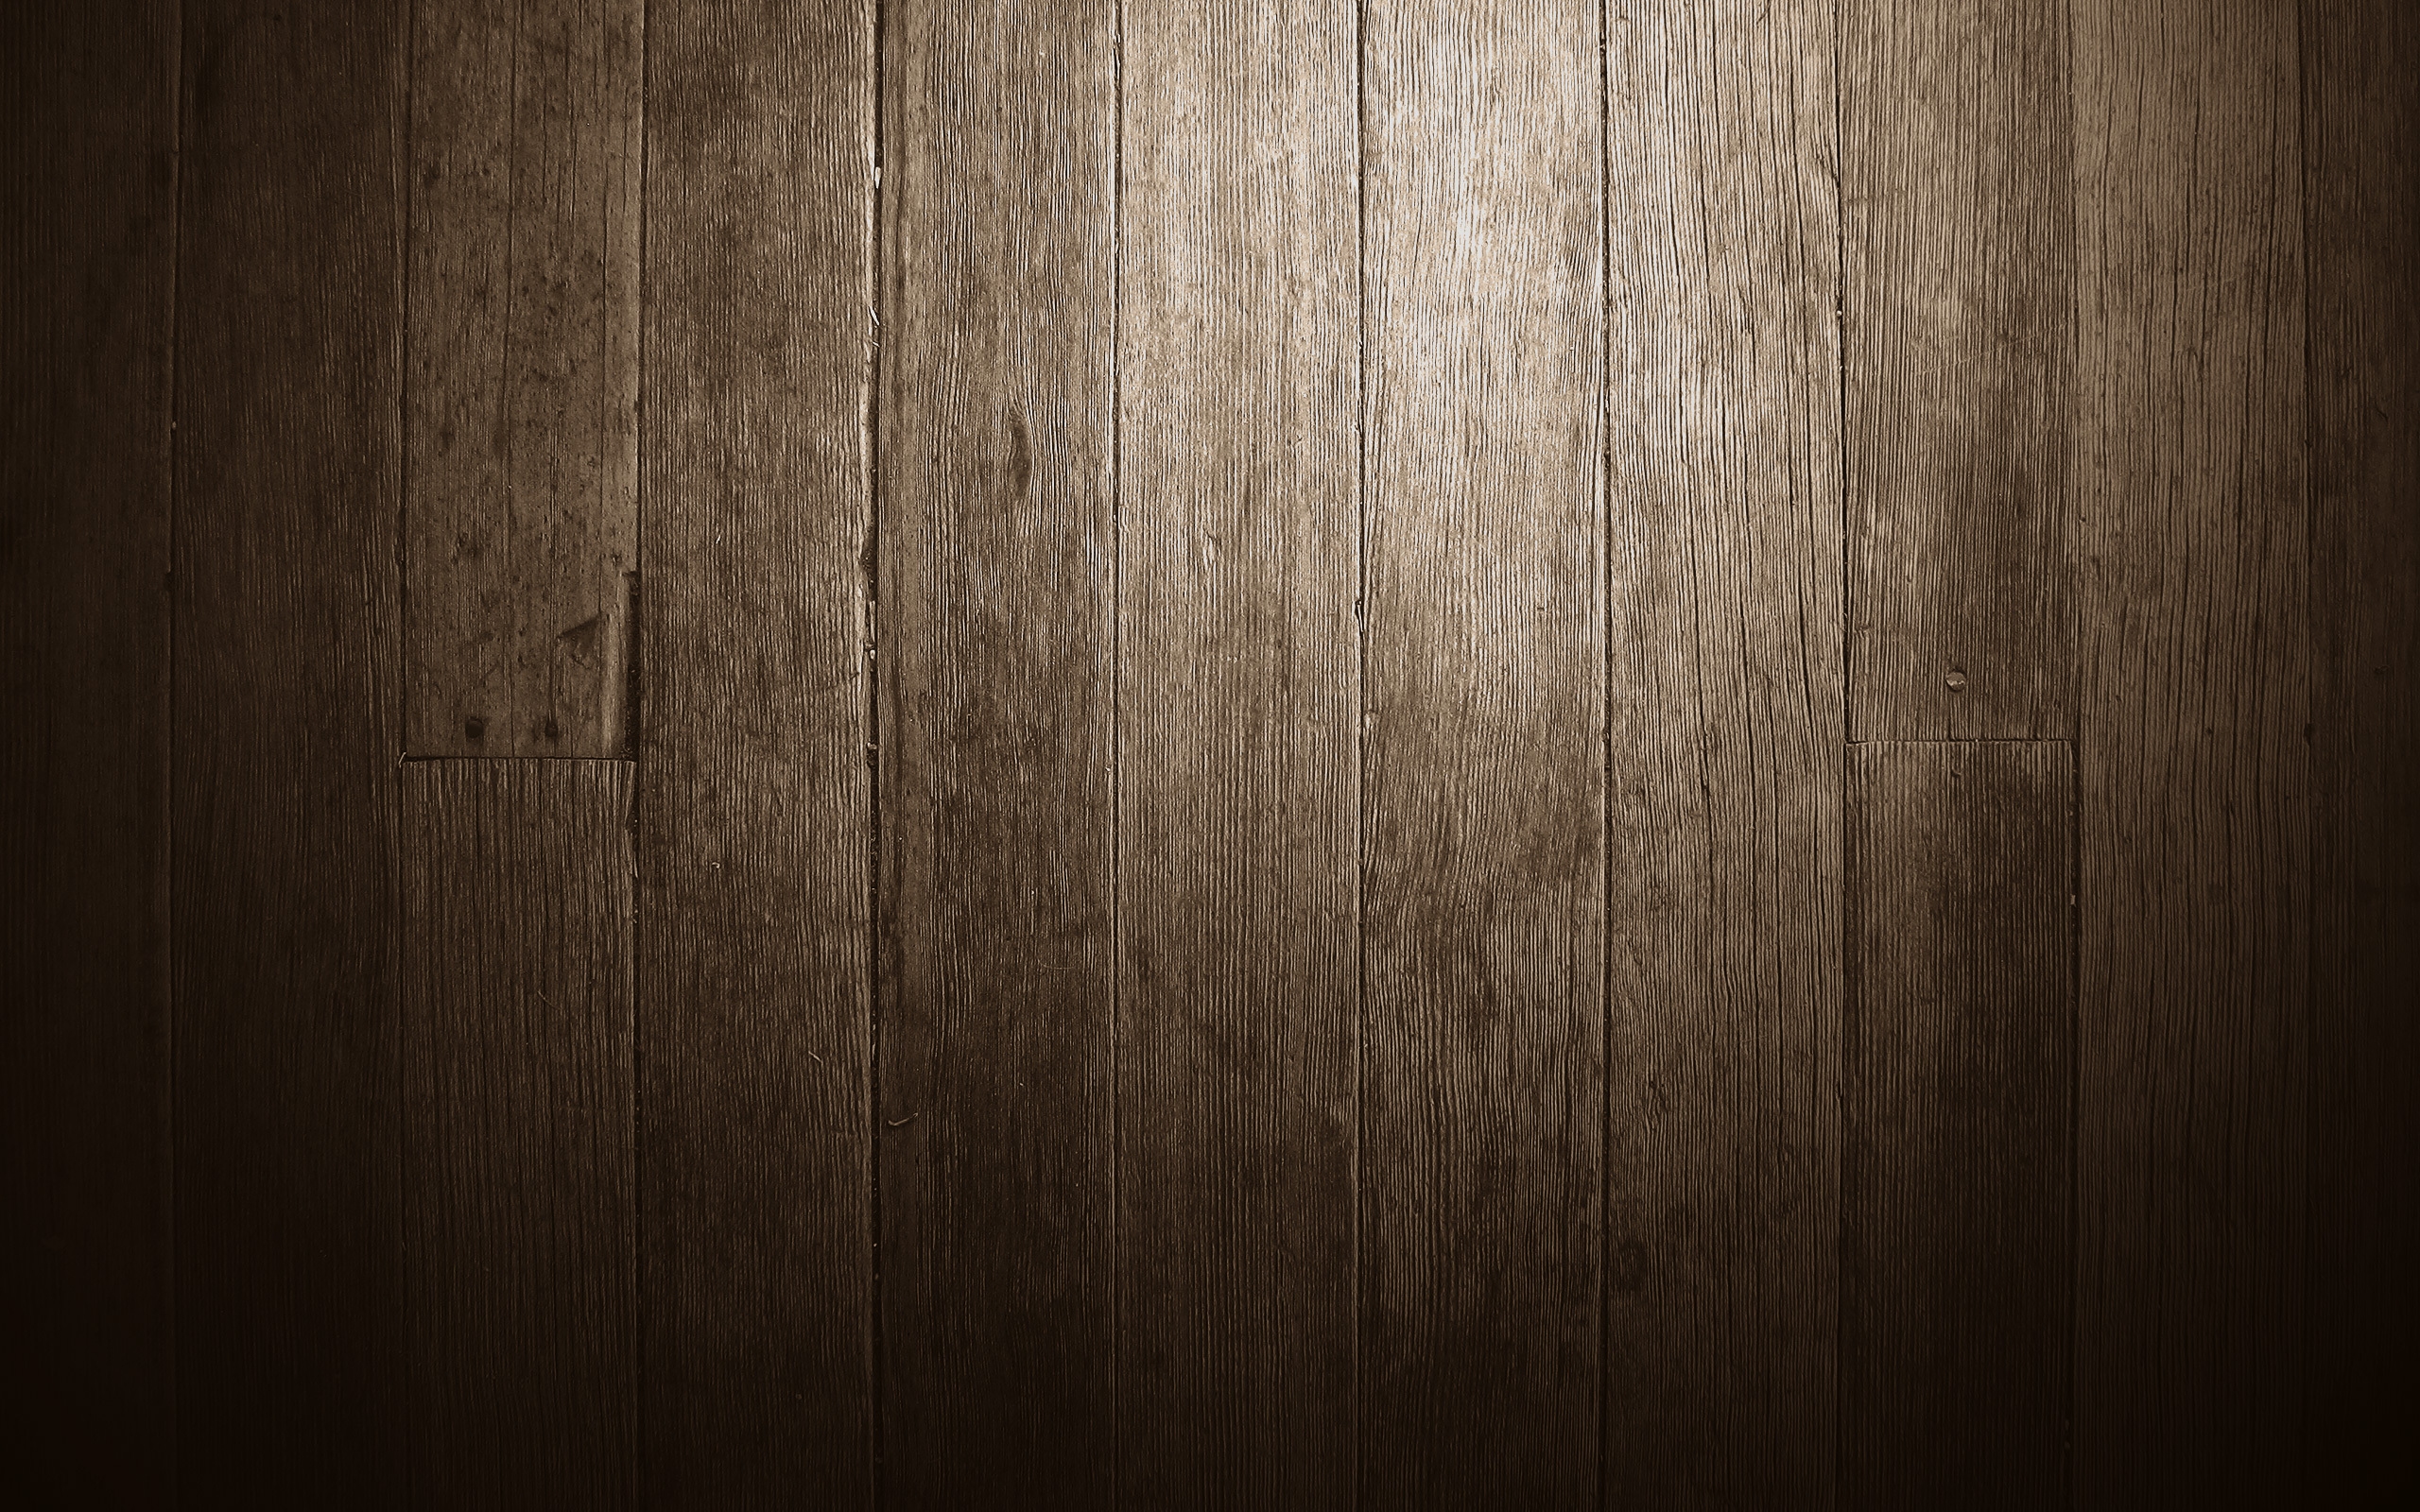 planking, wooden floor, texture, download photo, wood texture